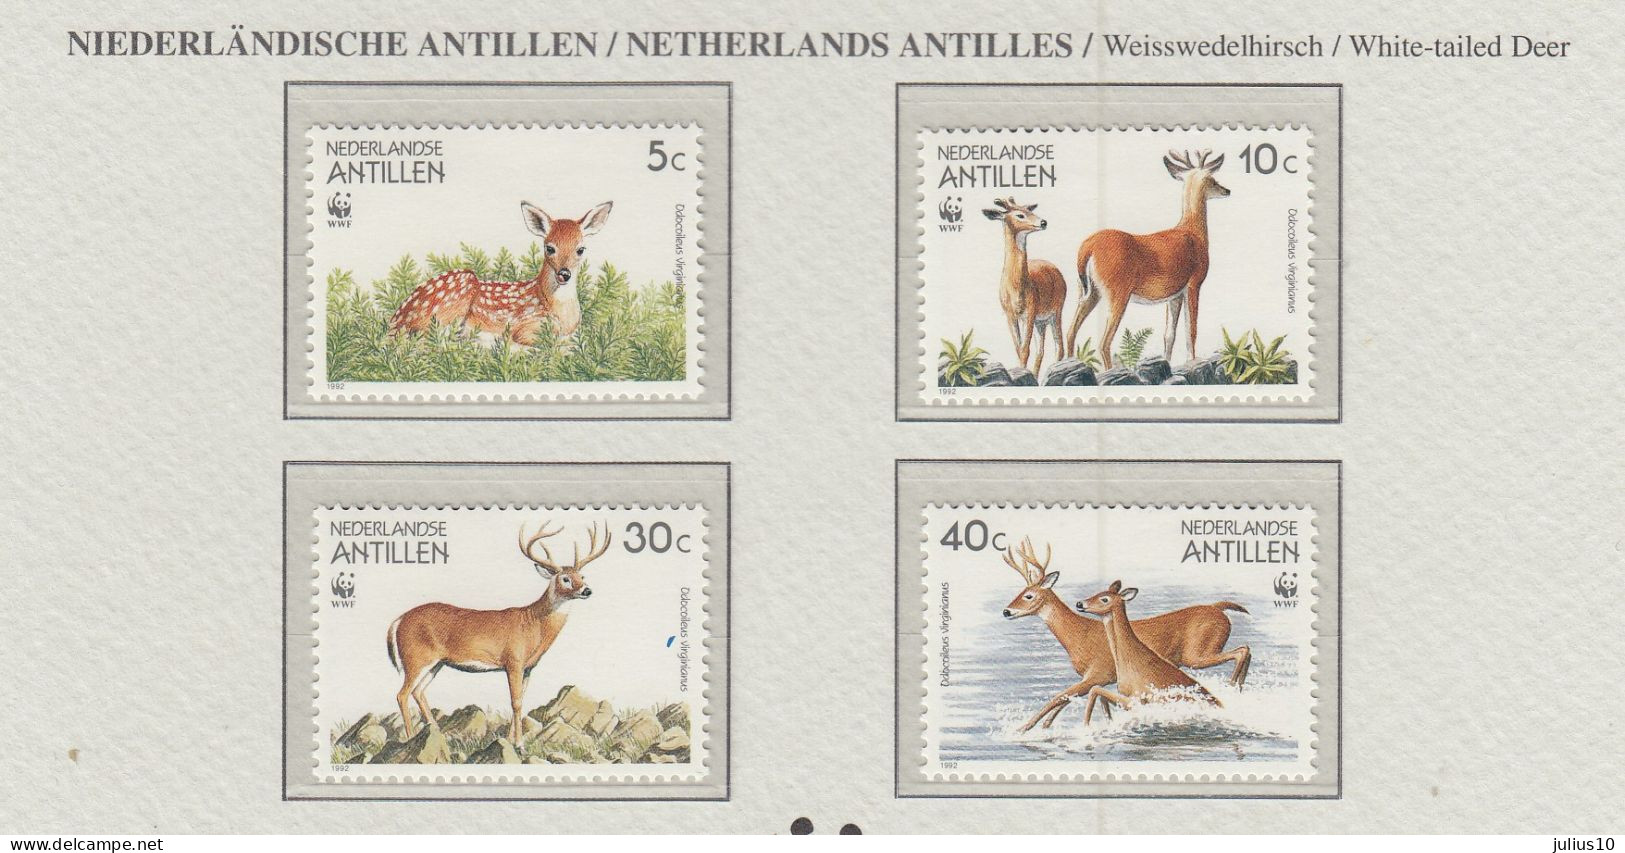 NETHERLANDS ANTILLES 1992 WWF Animals Deer Mi 739-742 MNH(**) Fauna 819 - Neufs